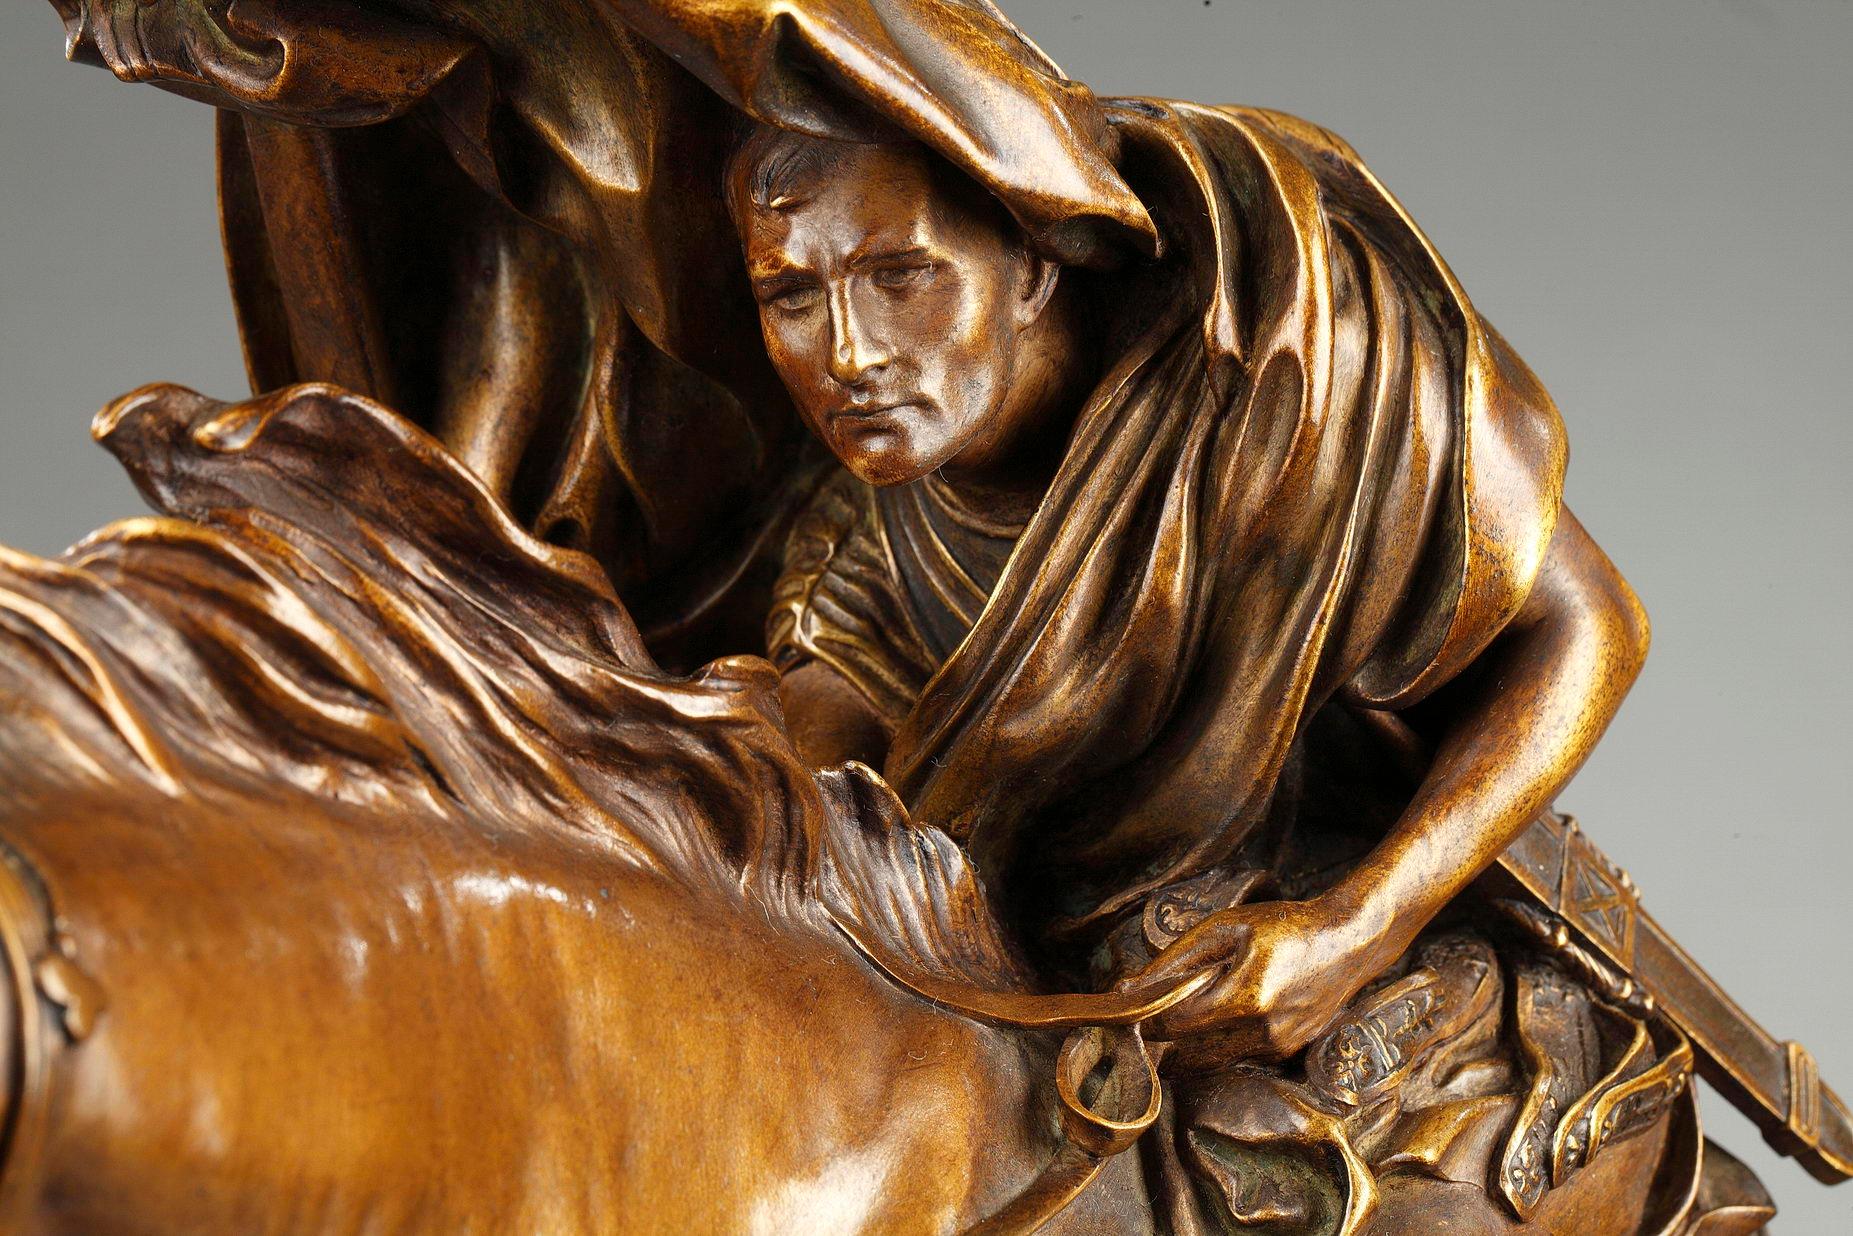 César franchissant le Rubicon - Gold Figurative Sculpture by Jean-Léon Gérôme